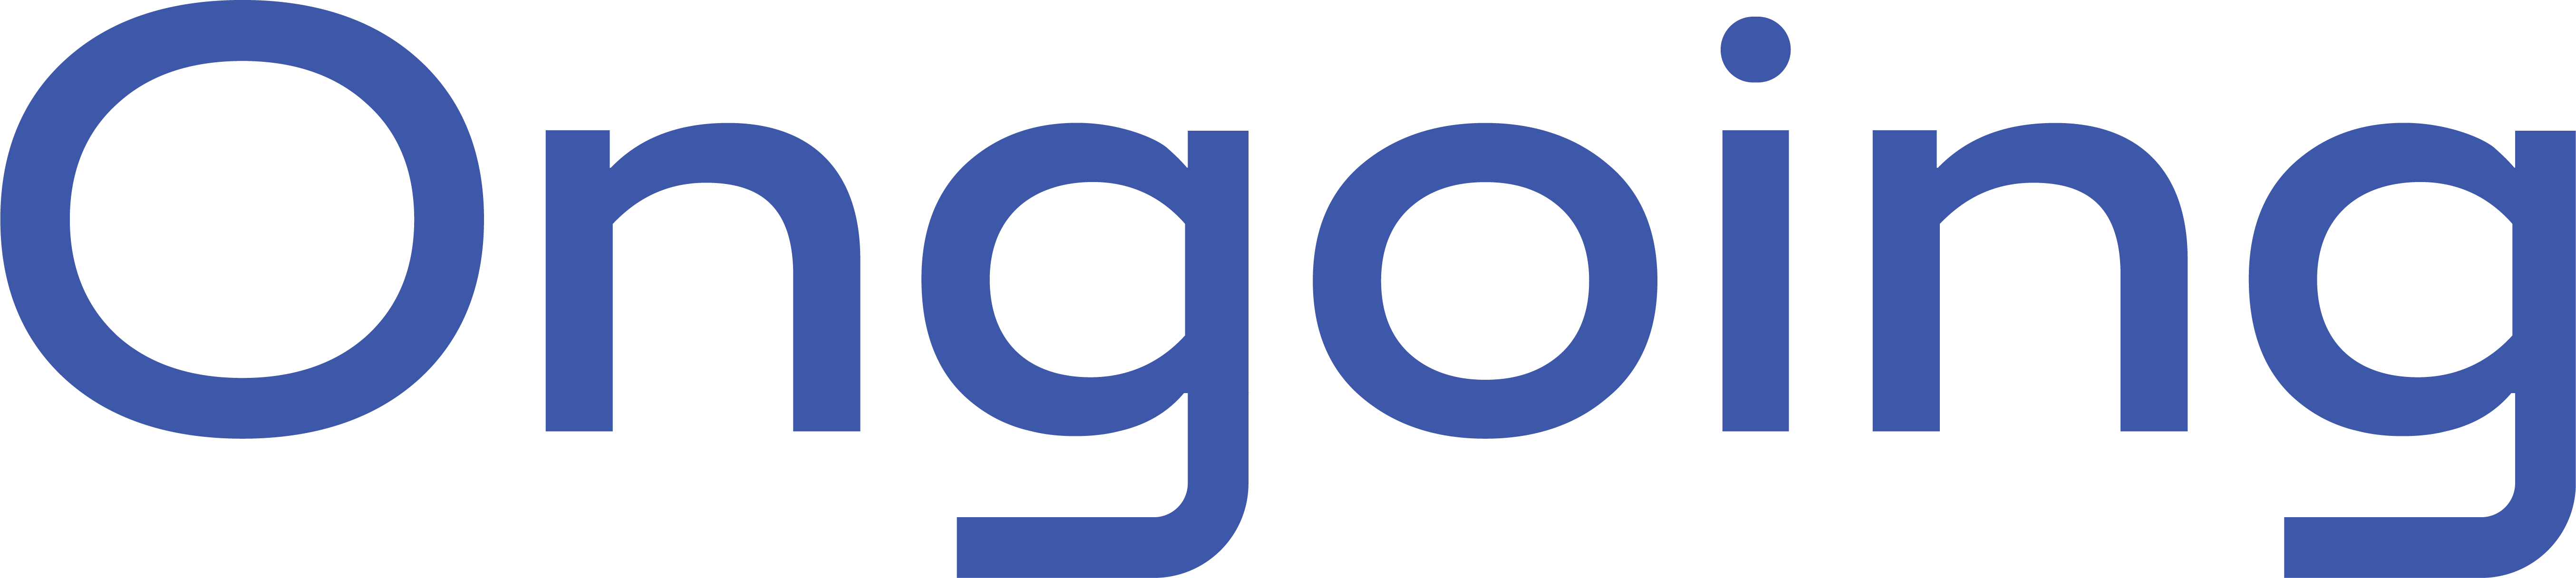 Ongoing logotype